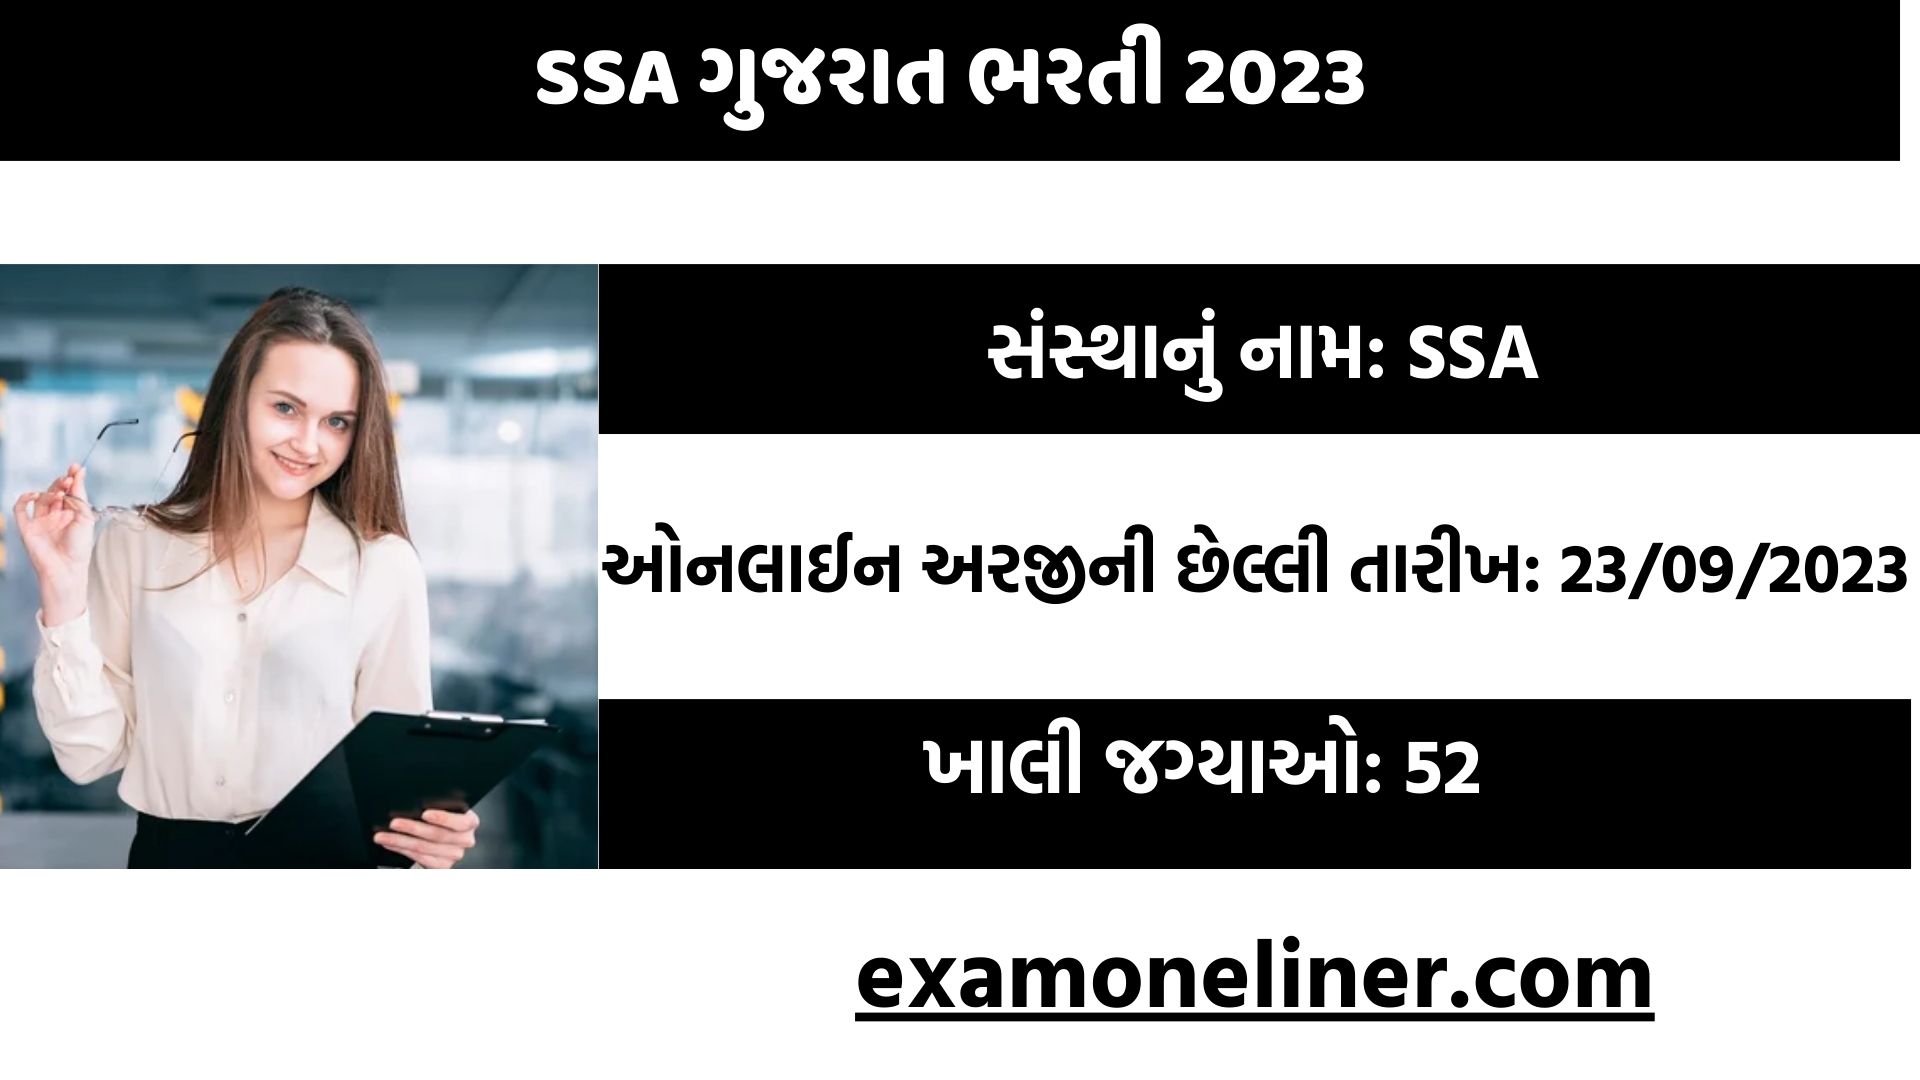 SSA ગુજરાત ભરતી 2023, પરીક્ષા વગર સિધી ભરતી.